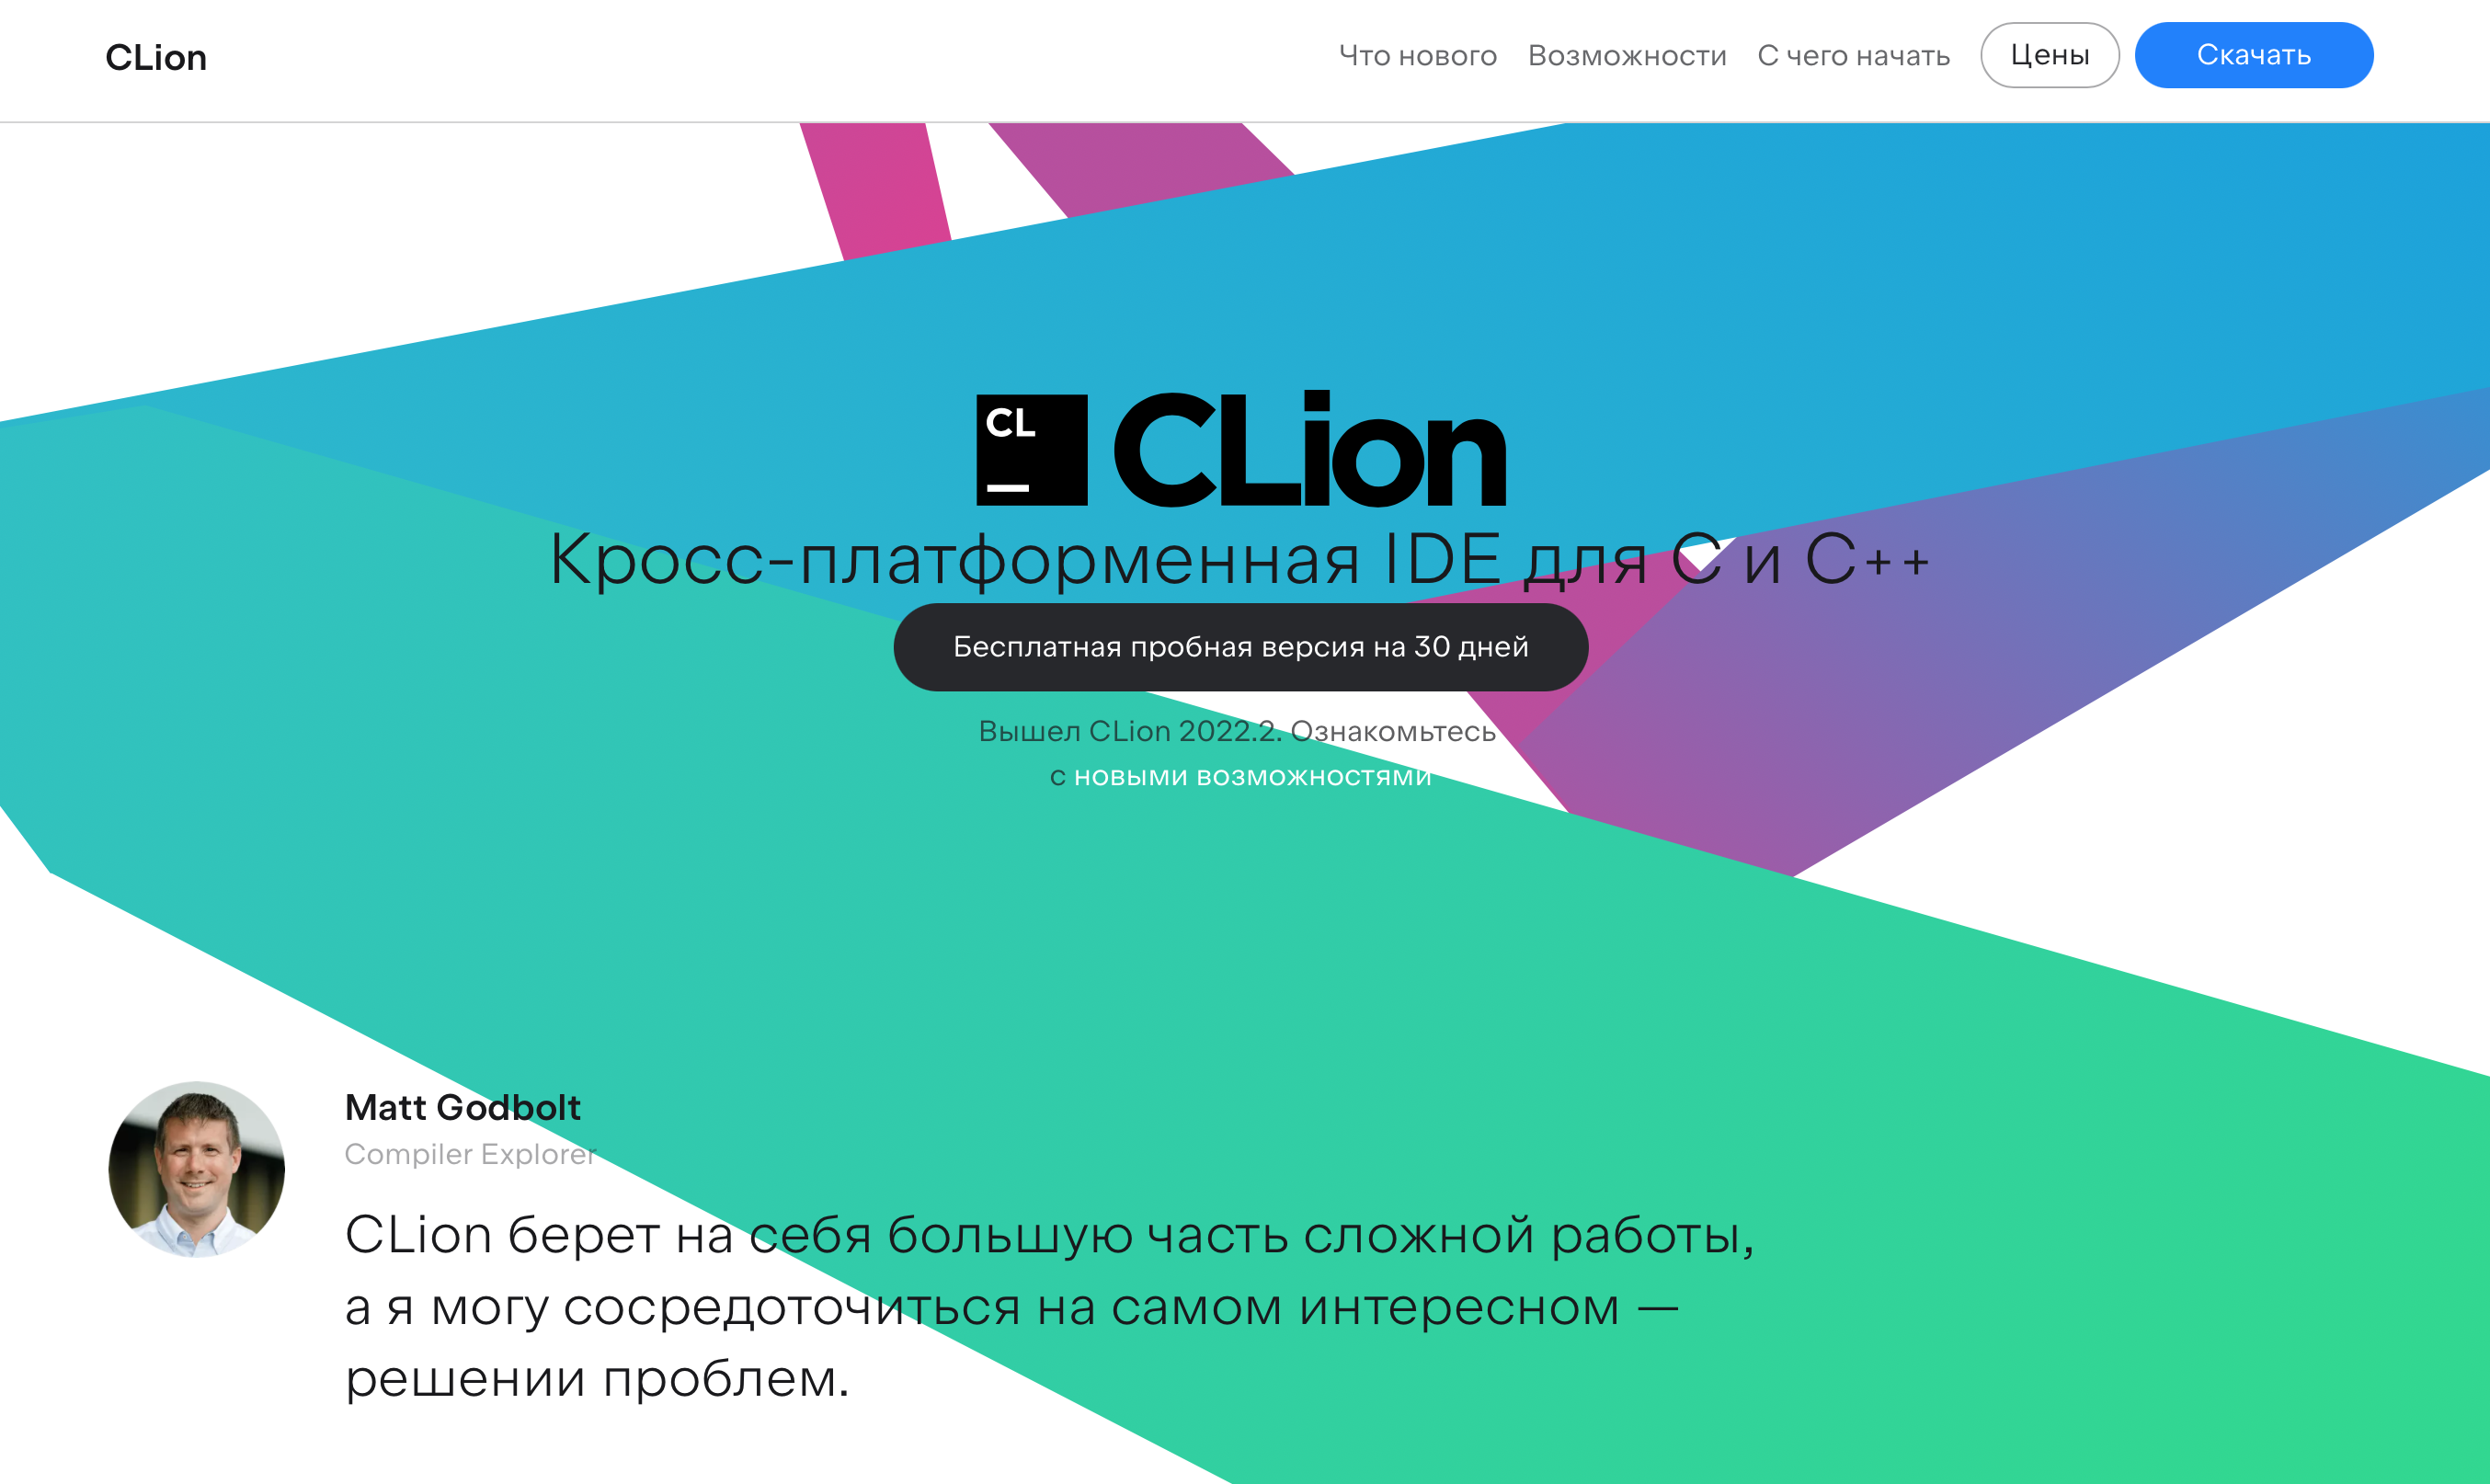 Clion